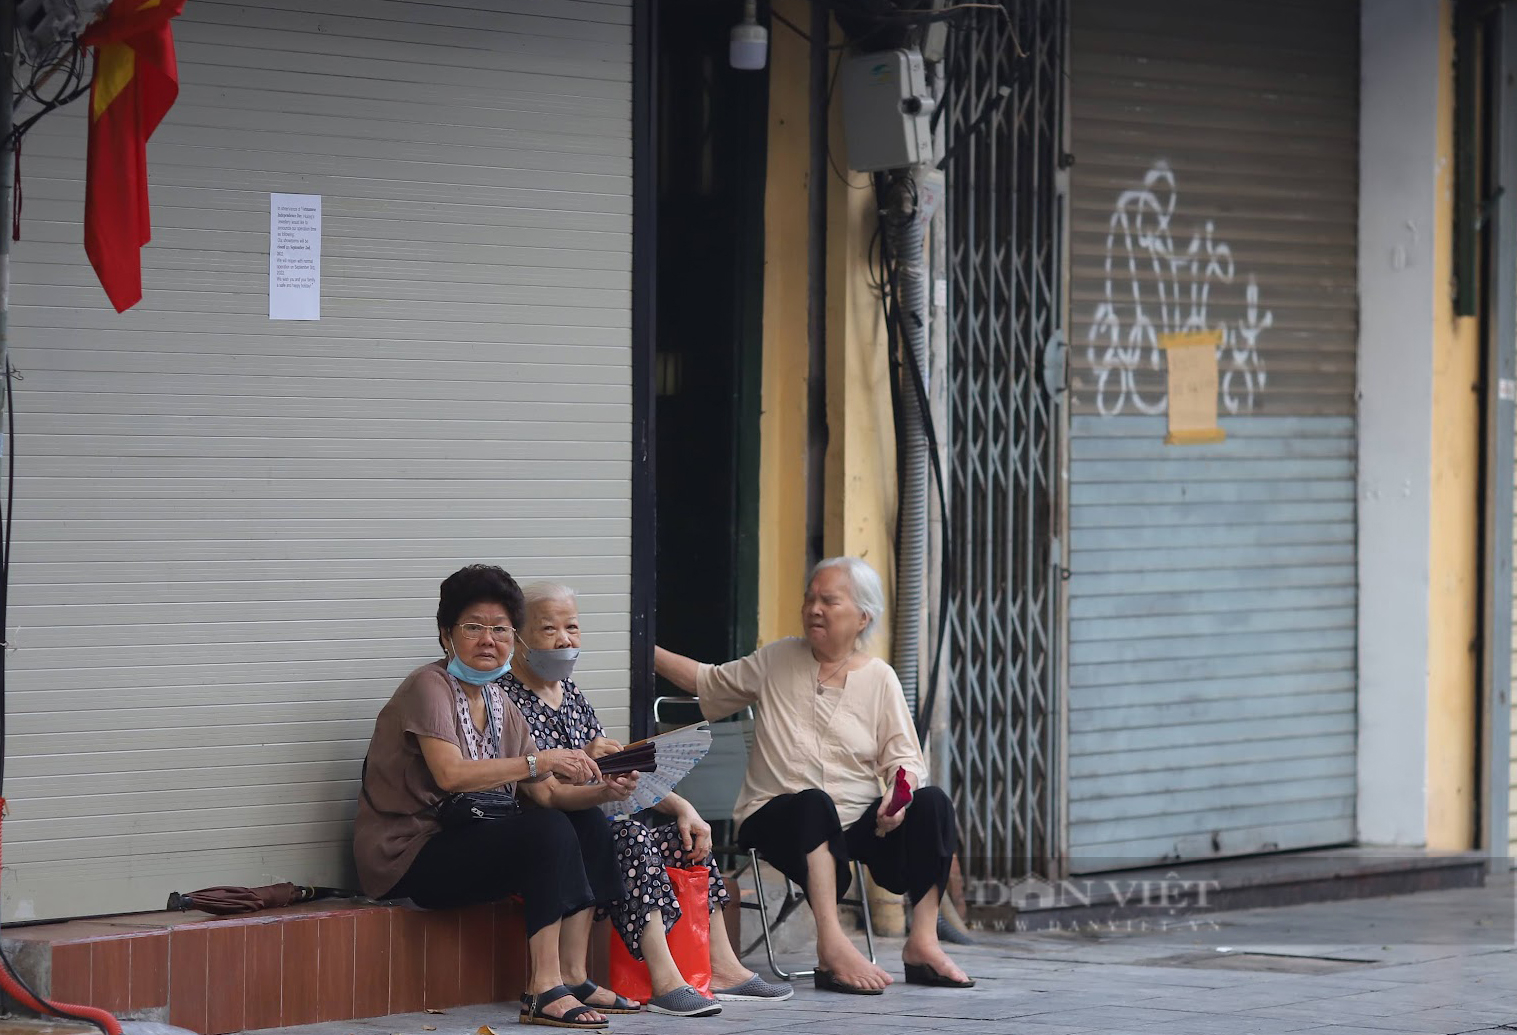 Hình ảnh bình dị trên đường phố Hà Nội trong ngày Quốc khánh 2/9 - Ảnh 5.